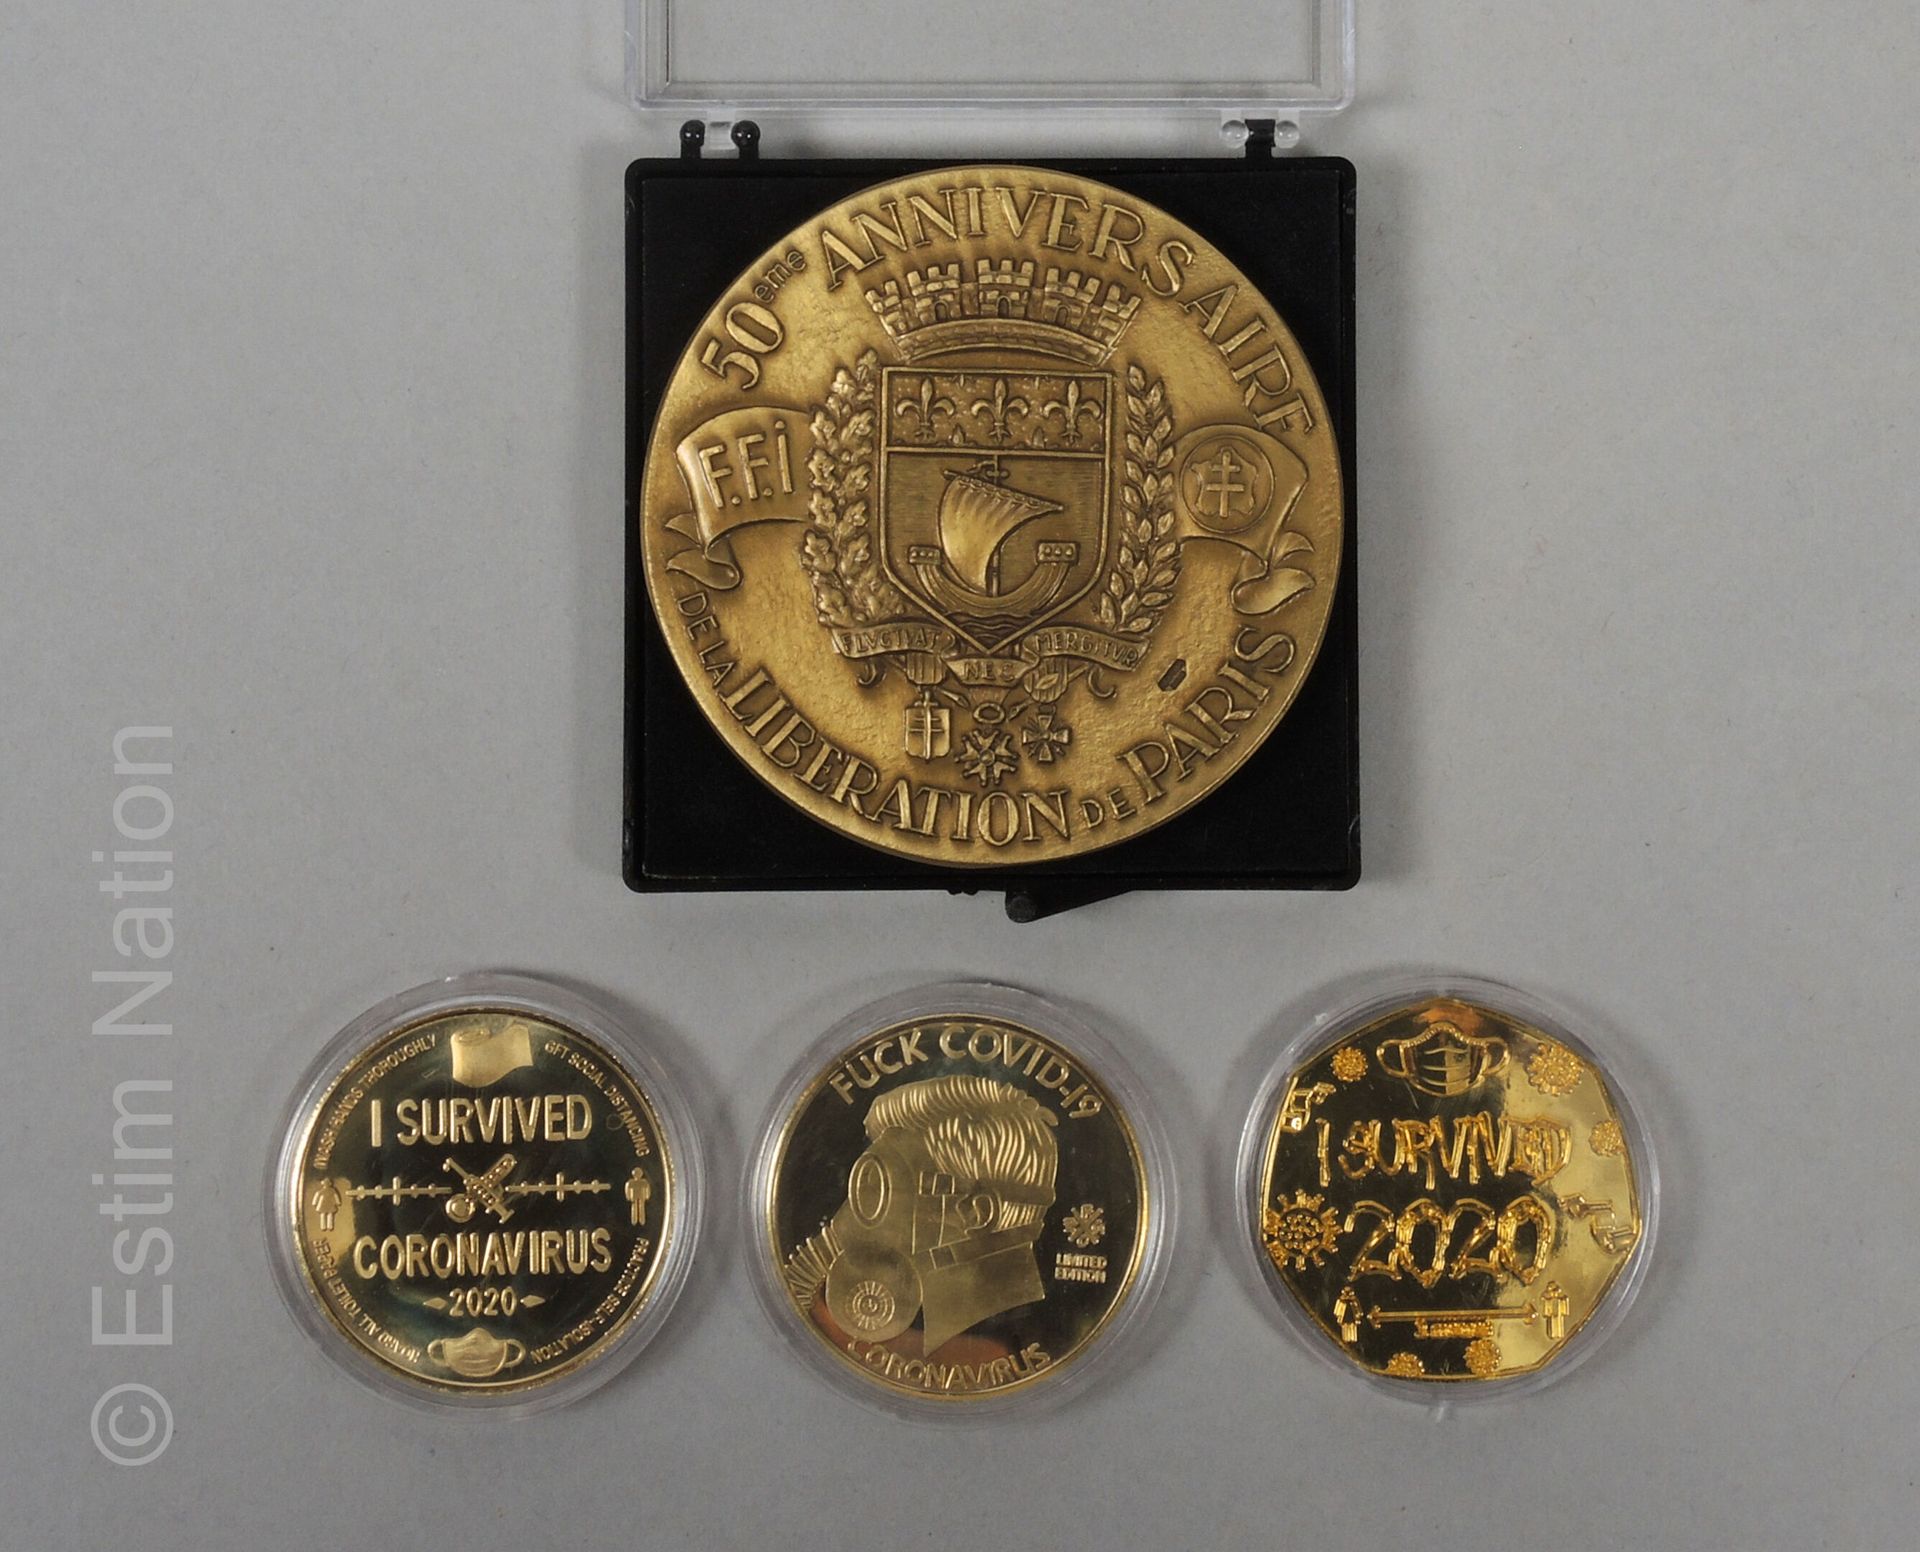 MEDAILLES ET MONNAIES 重要的铜质和各种金属镀金、镀银或印刷装饰的奖牌和硬币收藏，包括 :

- 两套 "法国国王"，2019年版

- 盒&hellip;